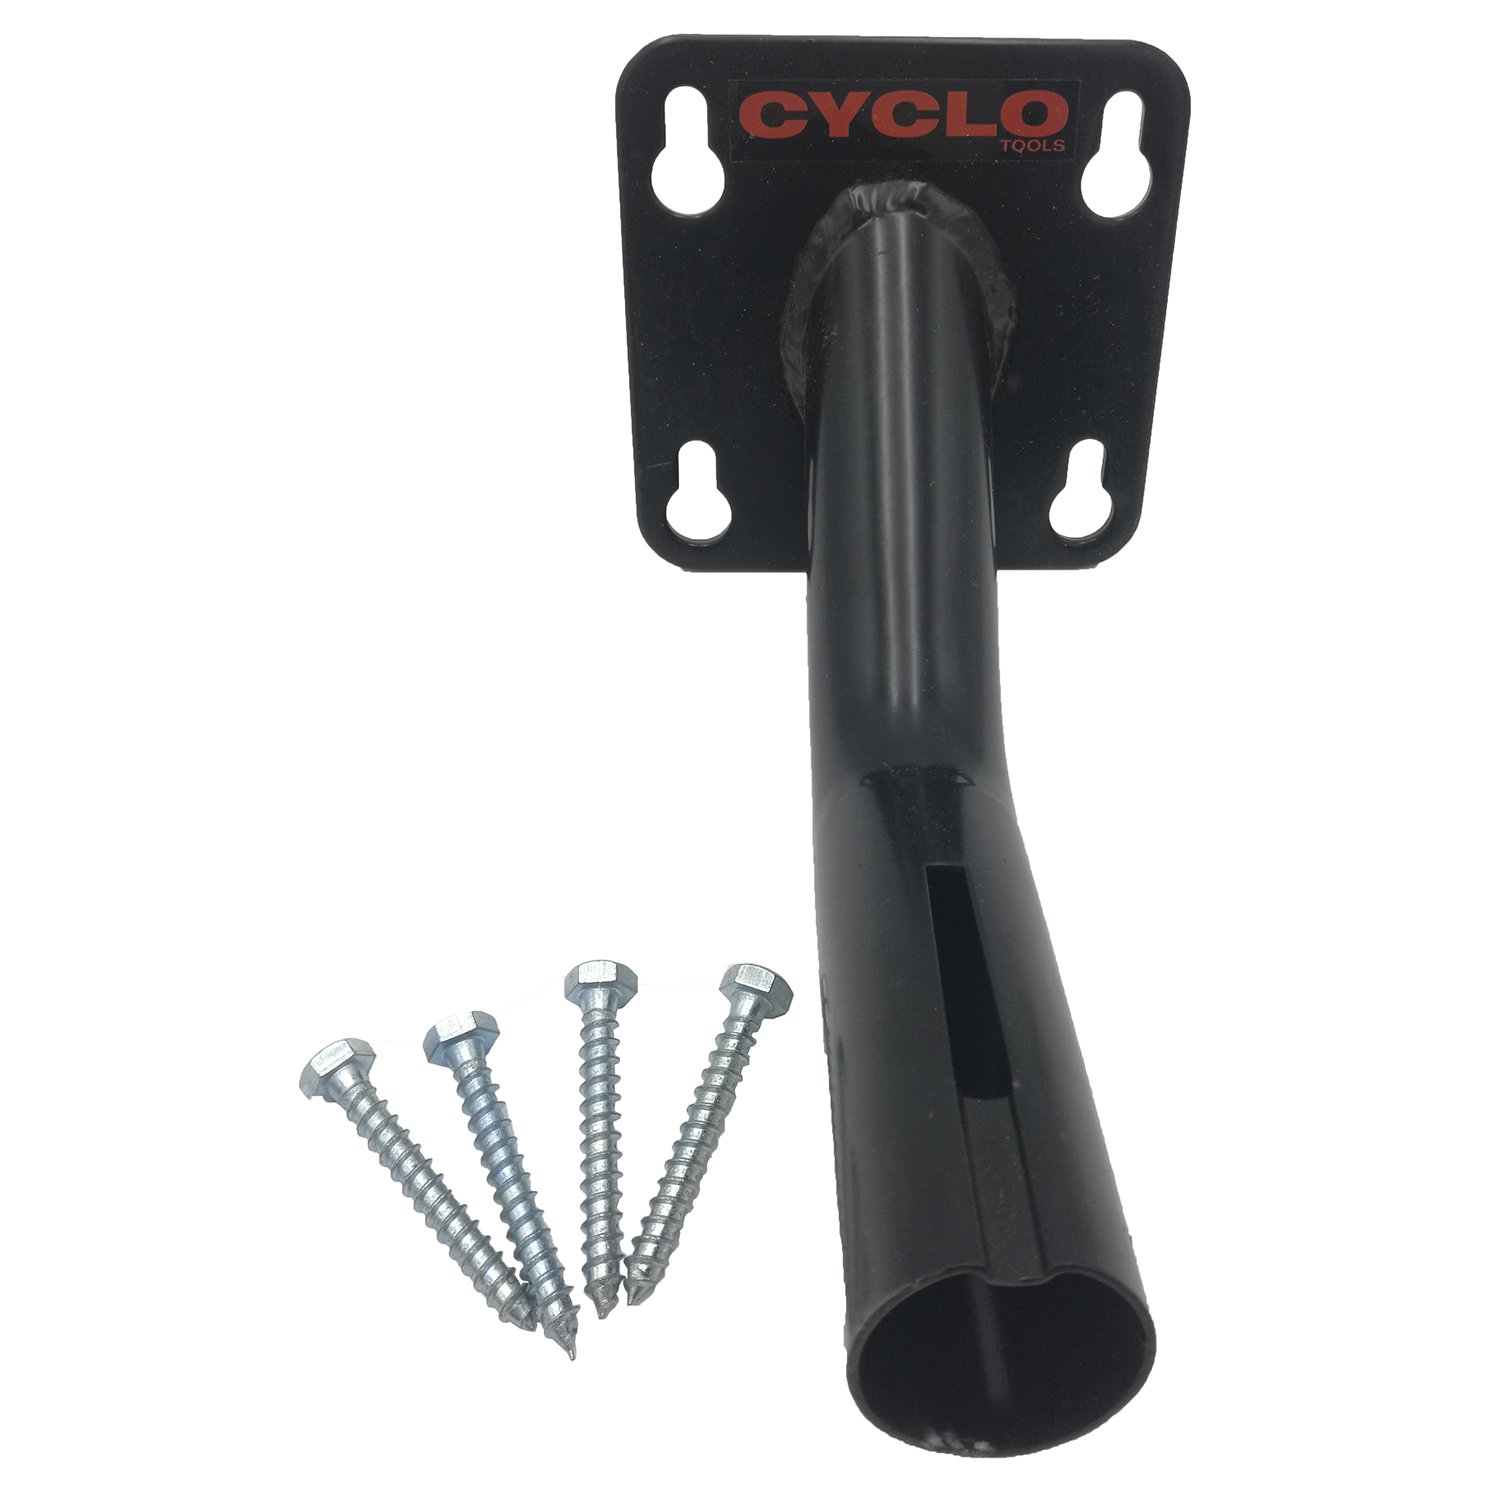 Стенд/крепление CYCLO для зажима 7-07740, к верстаку/столу, изогнутая труба, сталь, черное, 7-07745 стойка для велосипеда rockbros сталь крепление за колесо напольная kw 7076 07